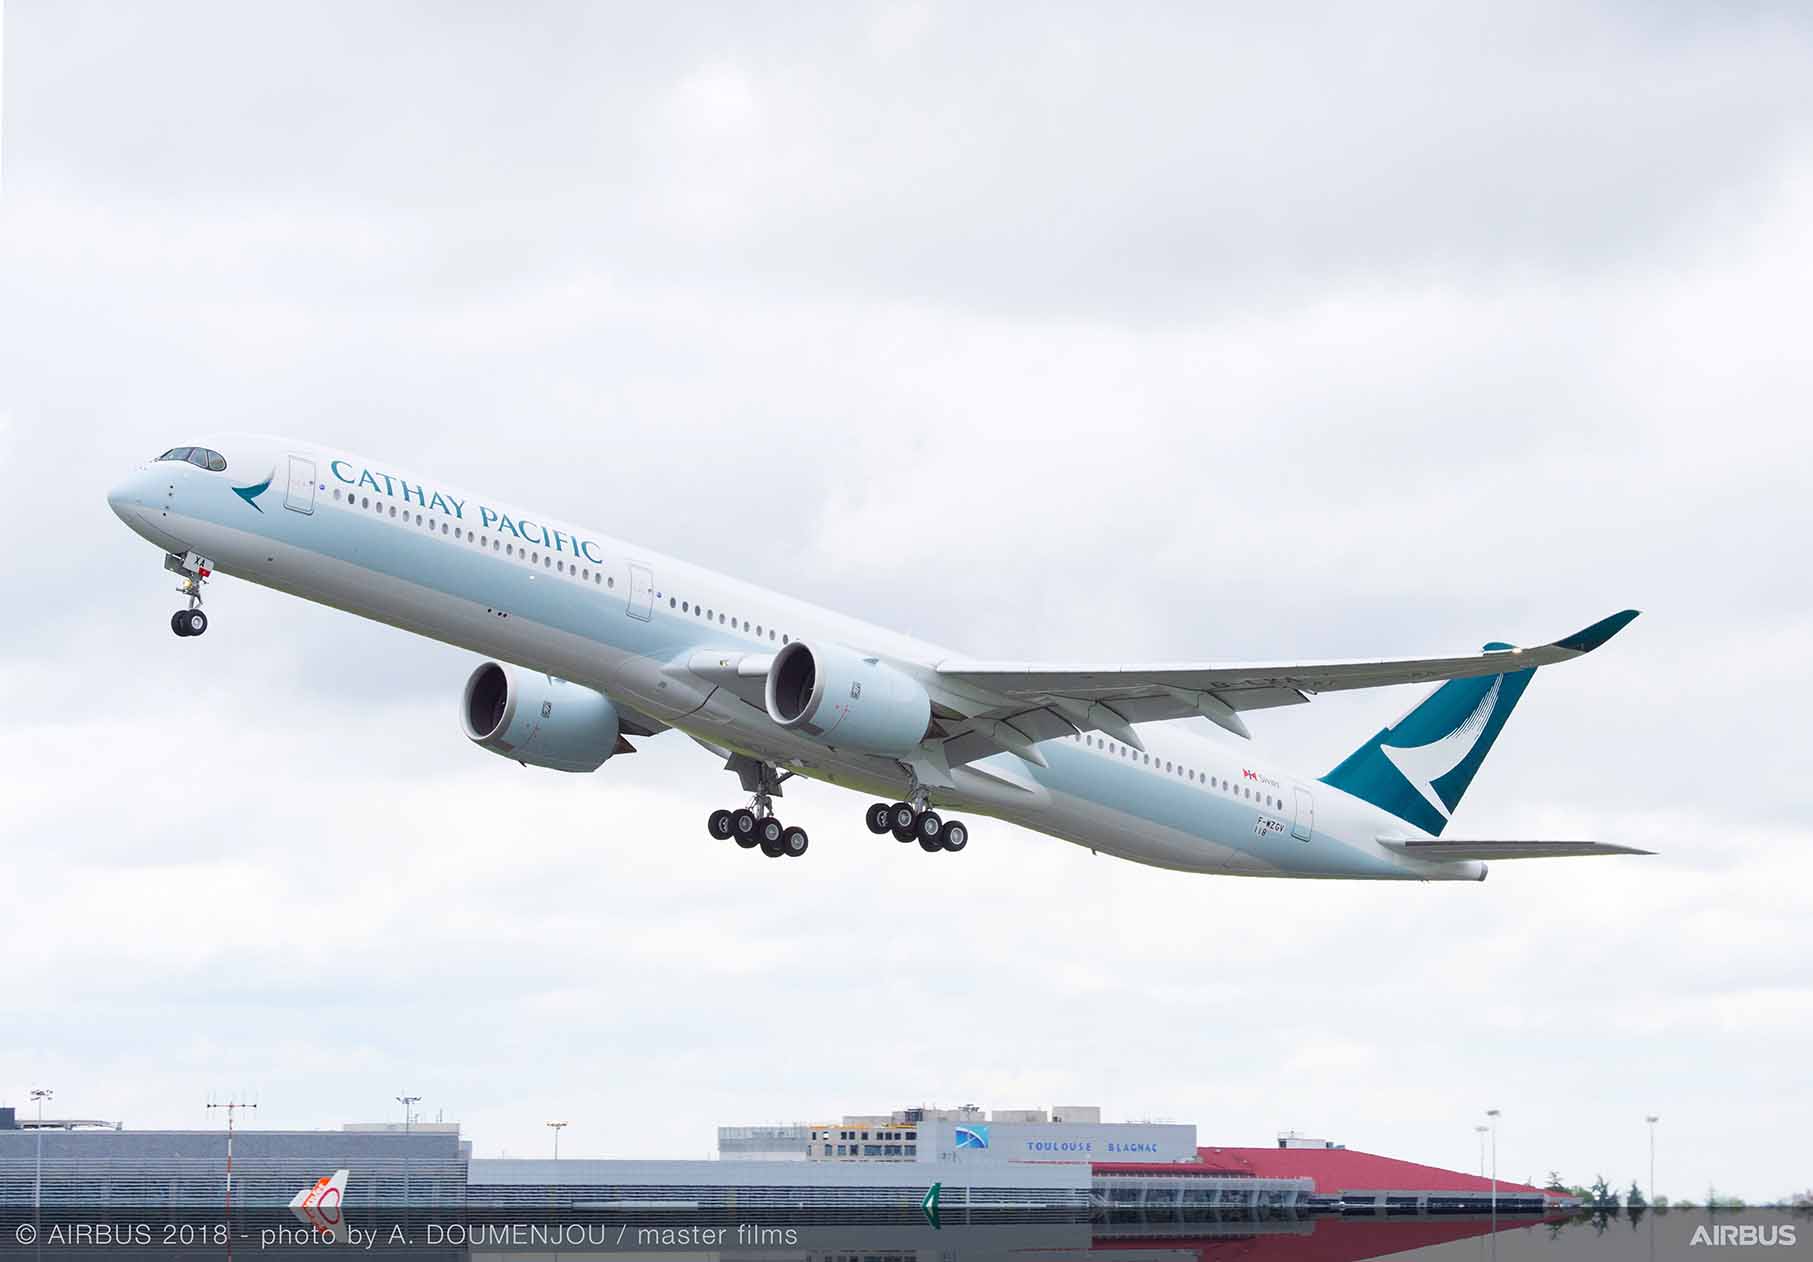 Cathay Pacific to boost Hong Kong-Perth capacity